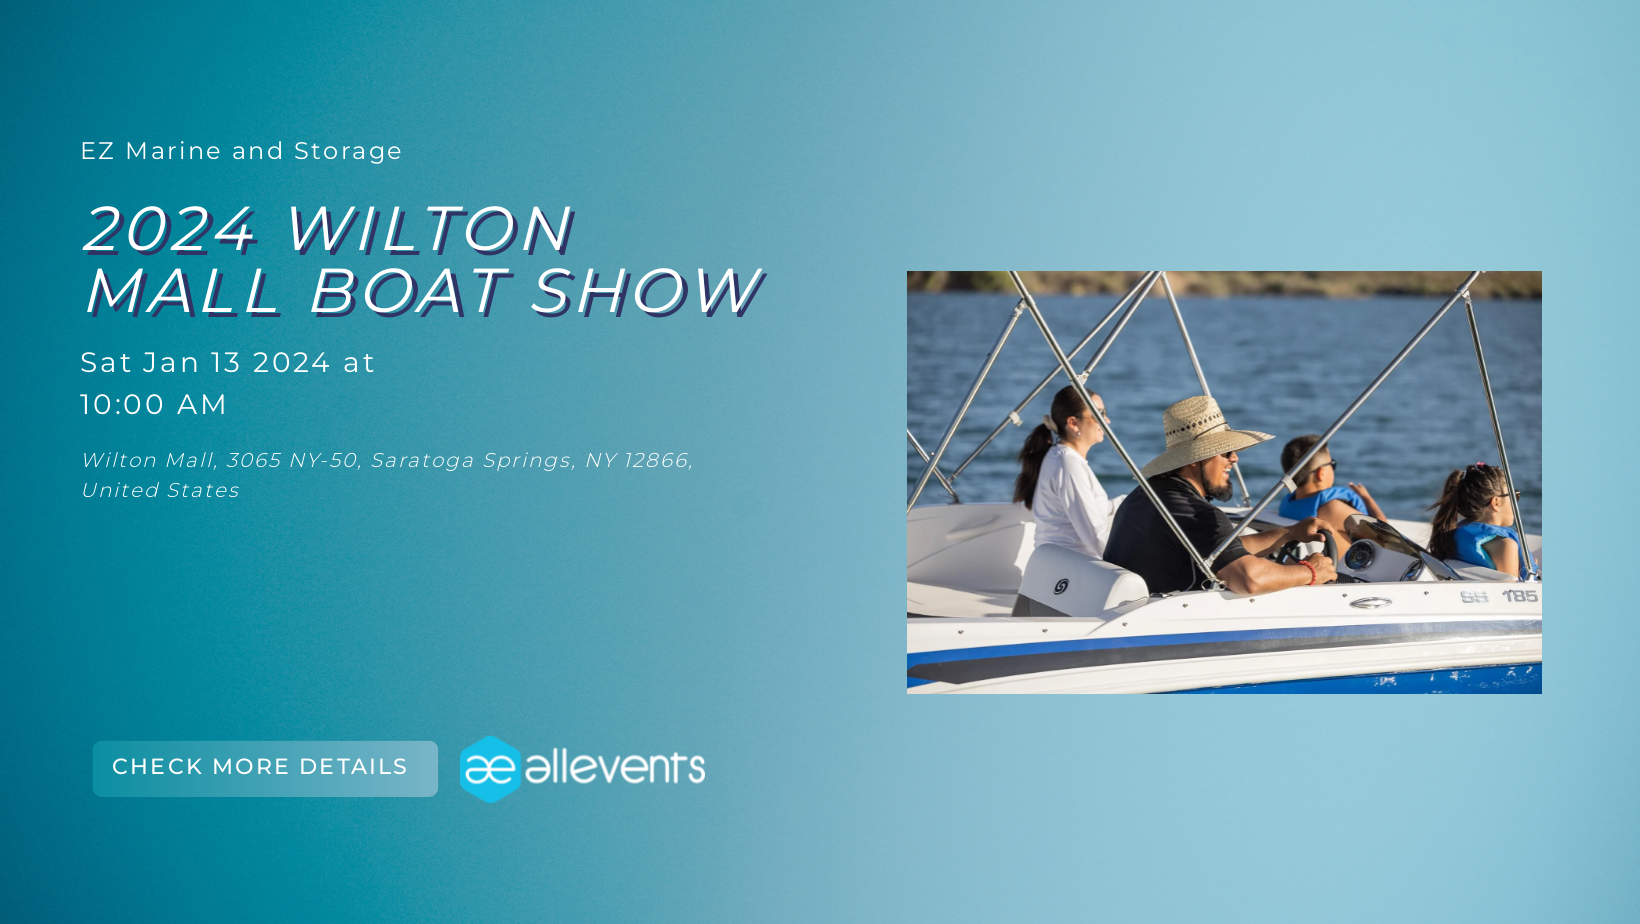 Wilton Mall Boat Show